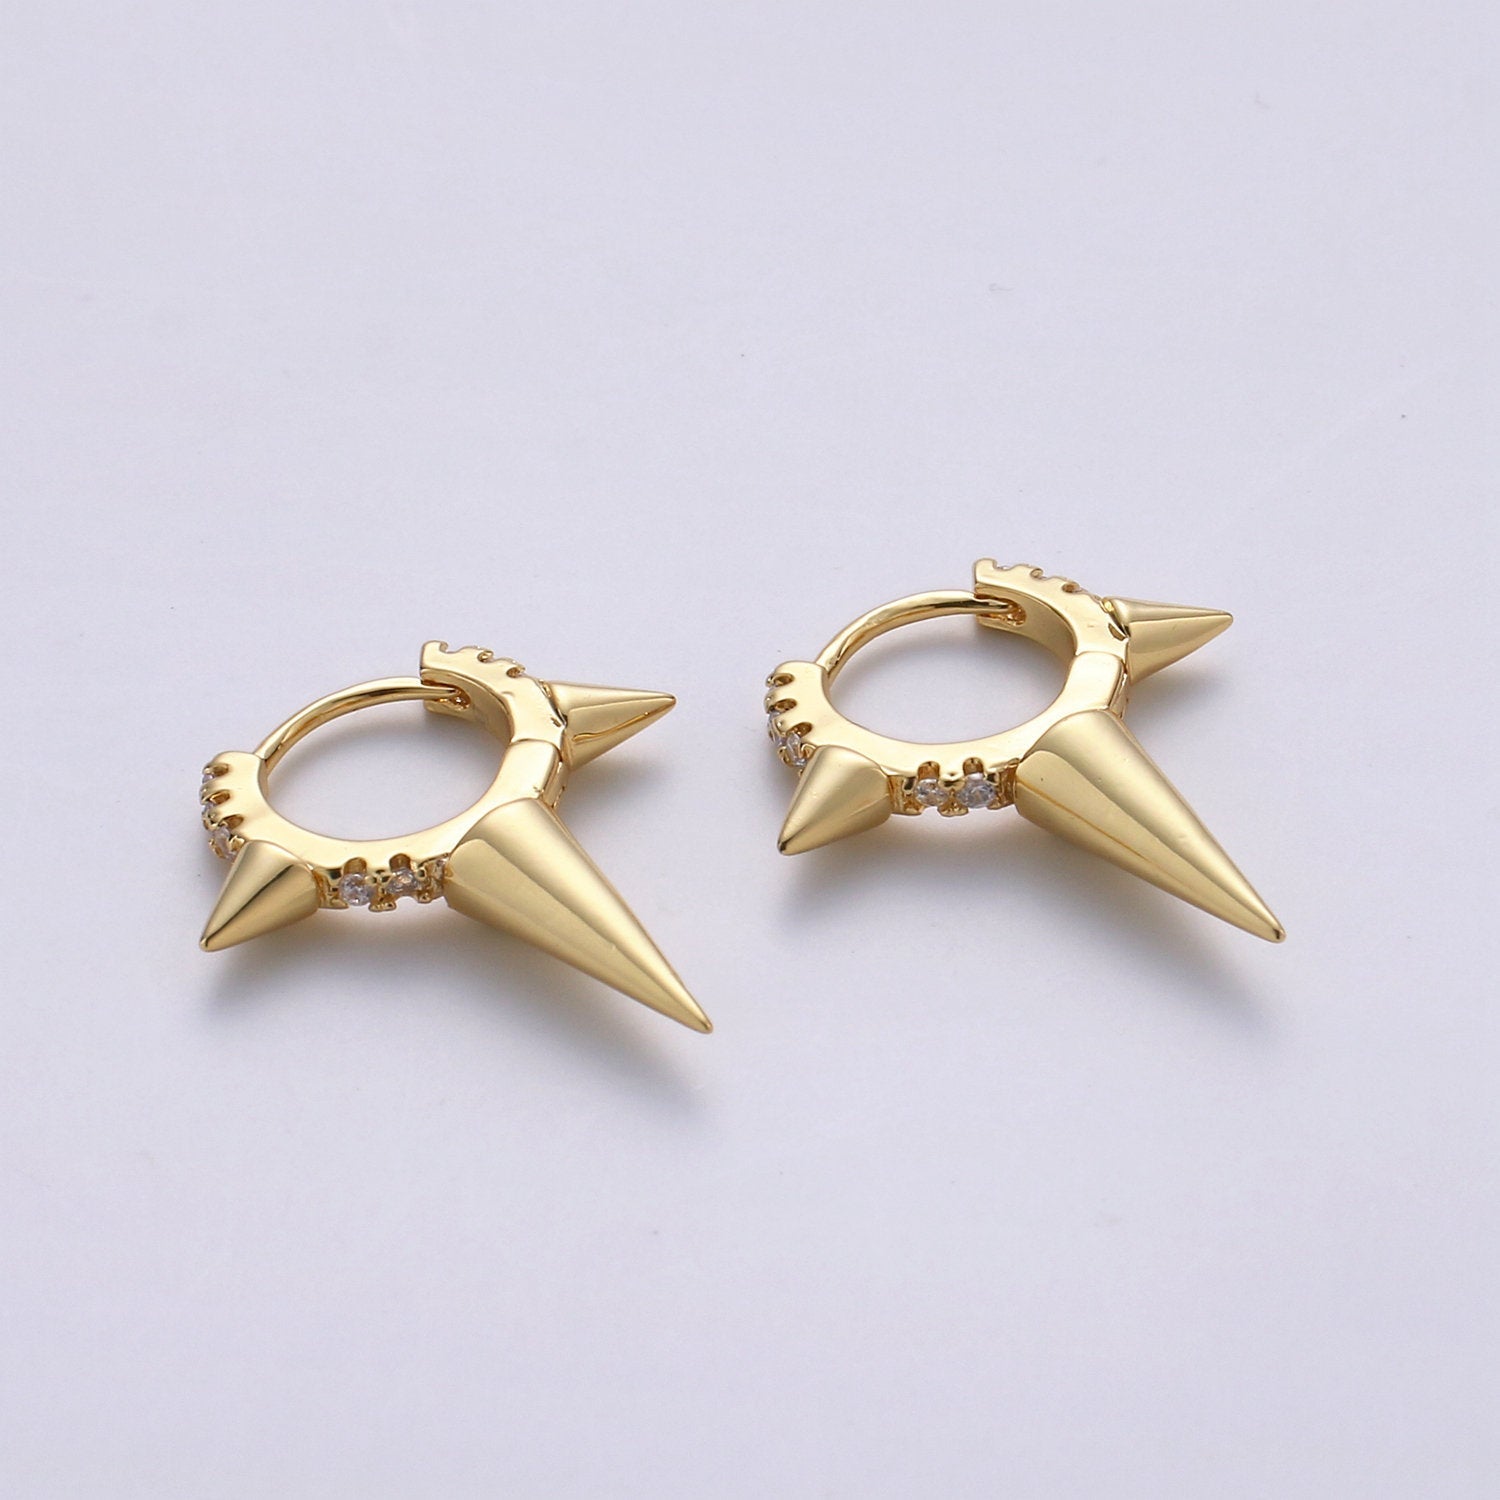 Gold Spiky Earrings, Spike Hoop Earrings, Dainty Huggie Earrings, Minimalist Earring, Small Gold Hoops Earring, Dainty Drop Earring - DLUXCA